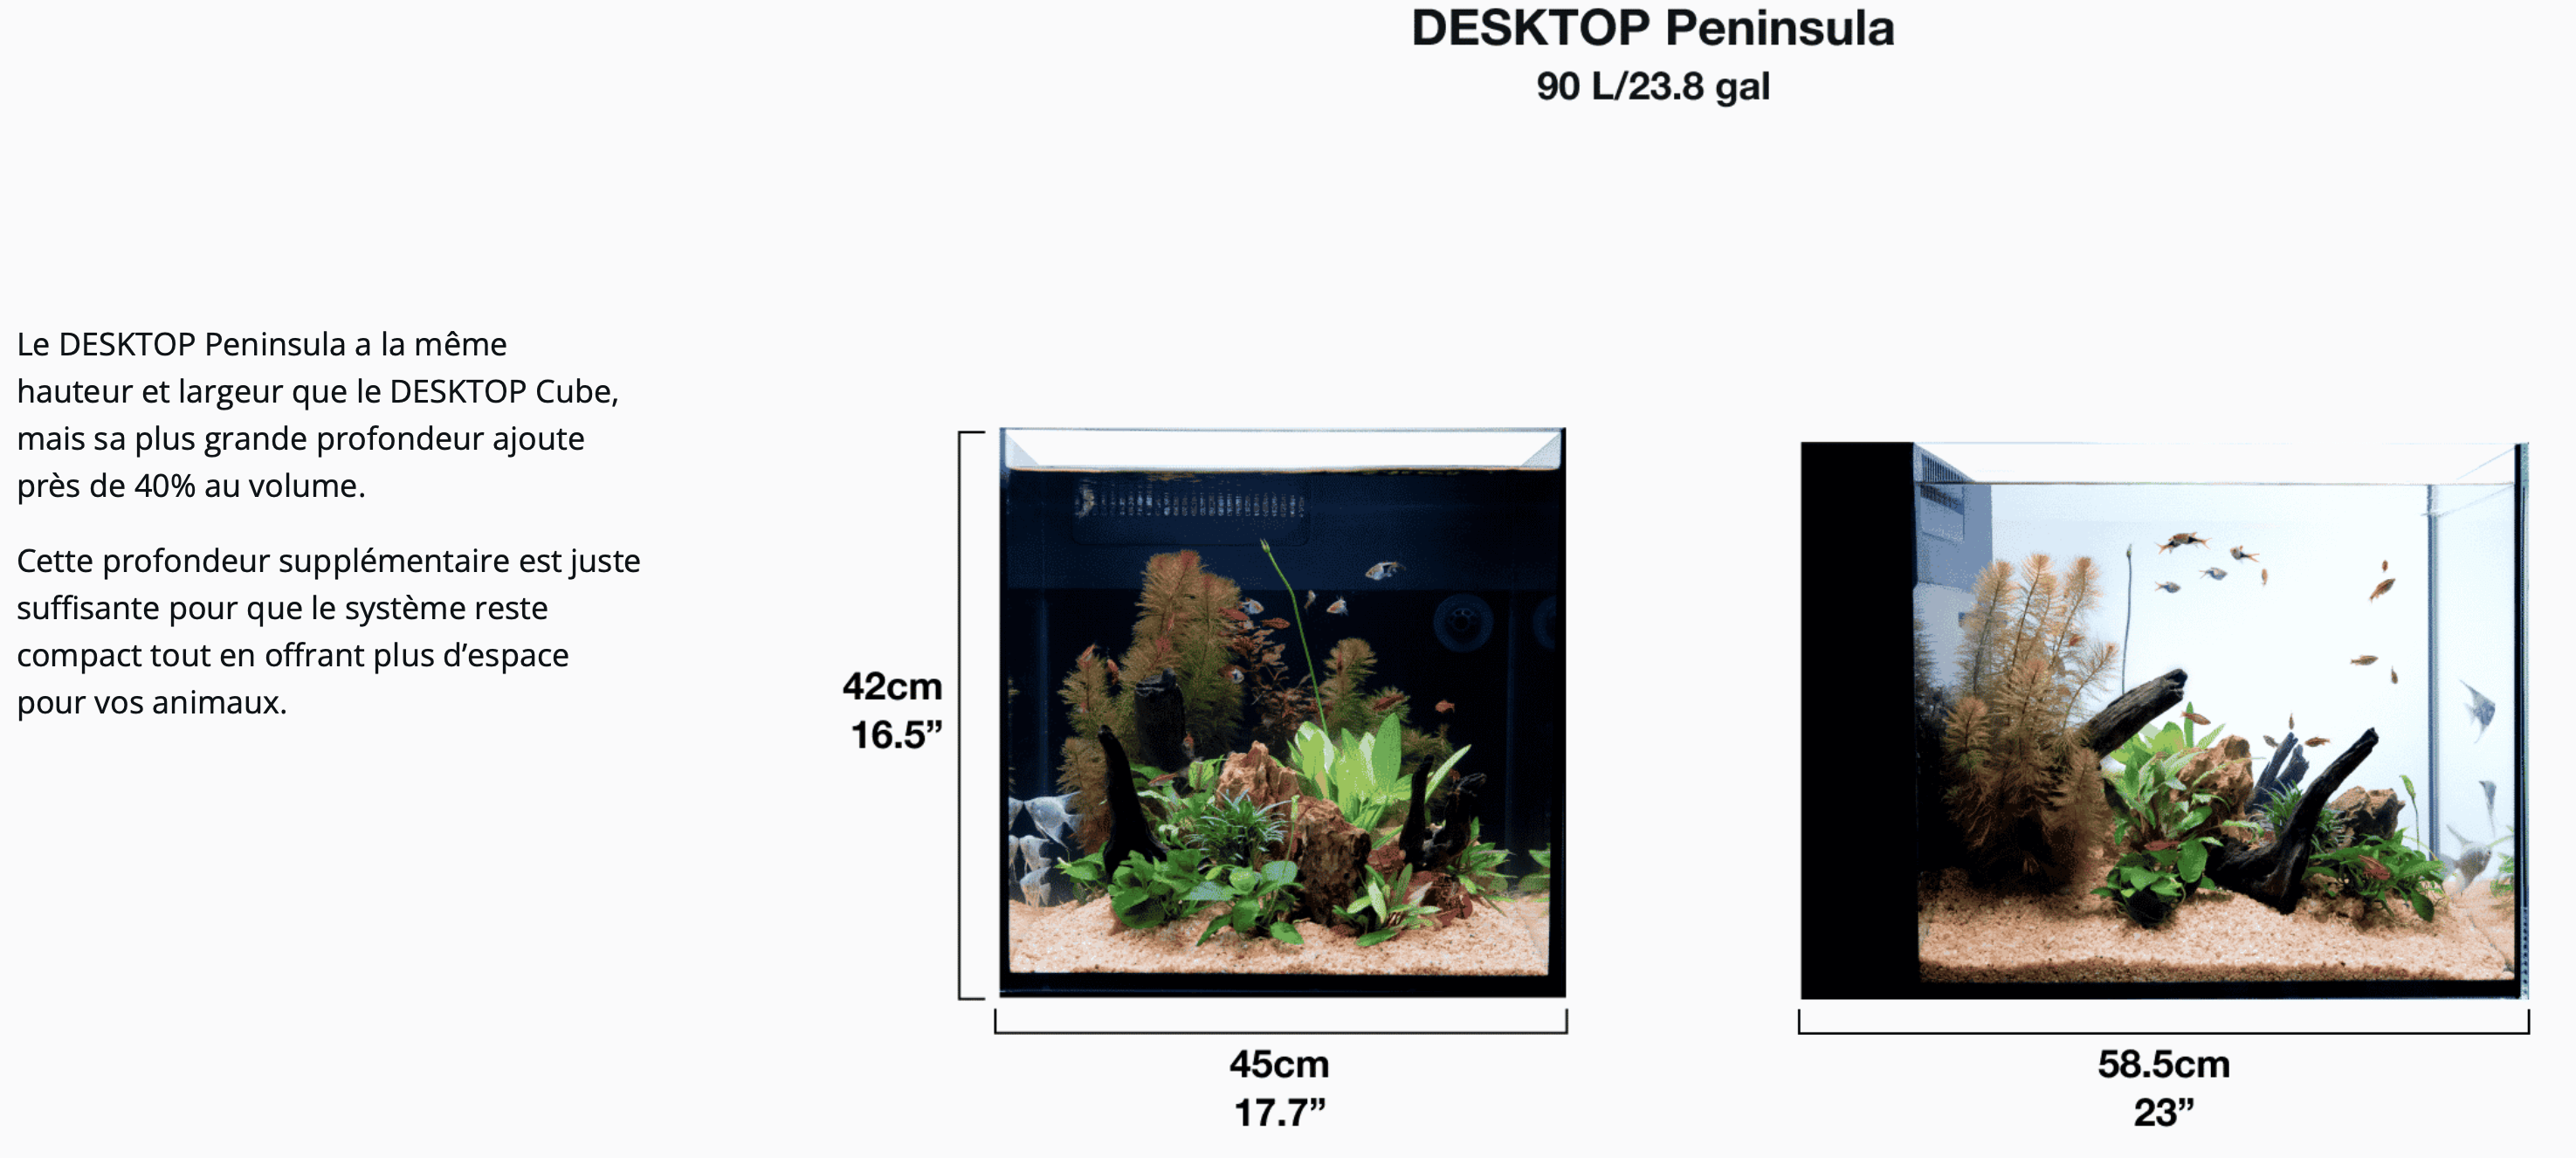 Le DESKTOP Peninsula a la même hauteur et largeur que le DESKTOP Cube, mais sa plus grande profondeur ajoute près de 40% au volume.  Cette profondeur supplémentaire est juste suffisante pour que le système reste compact tout en offrant plus d’espace pour vos animaux.